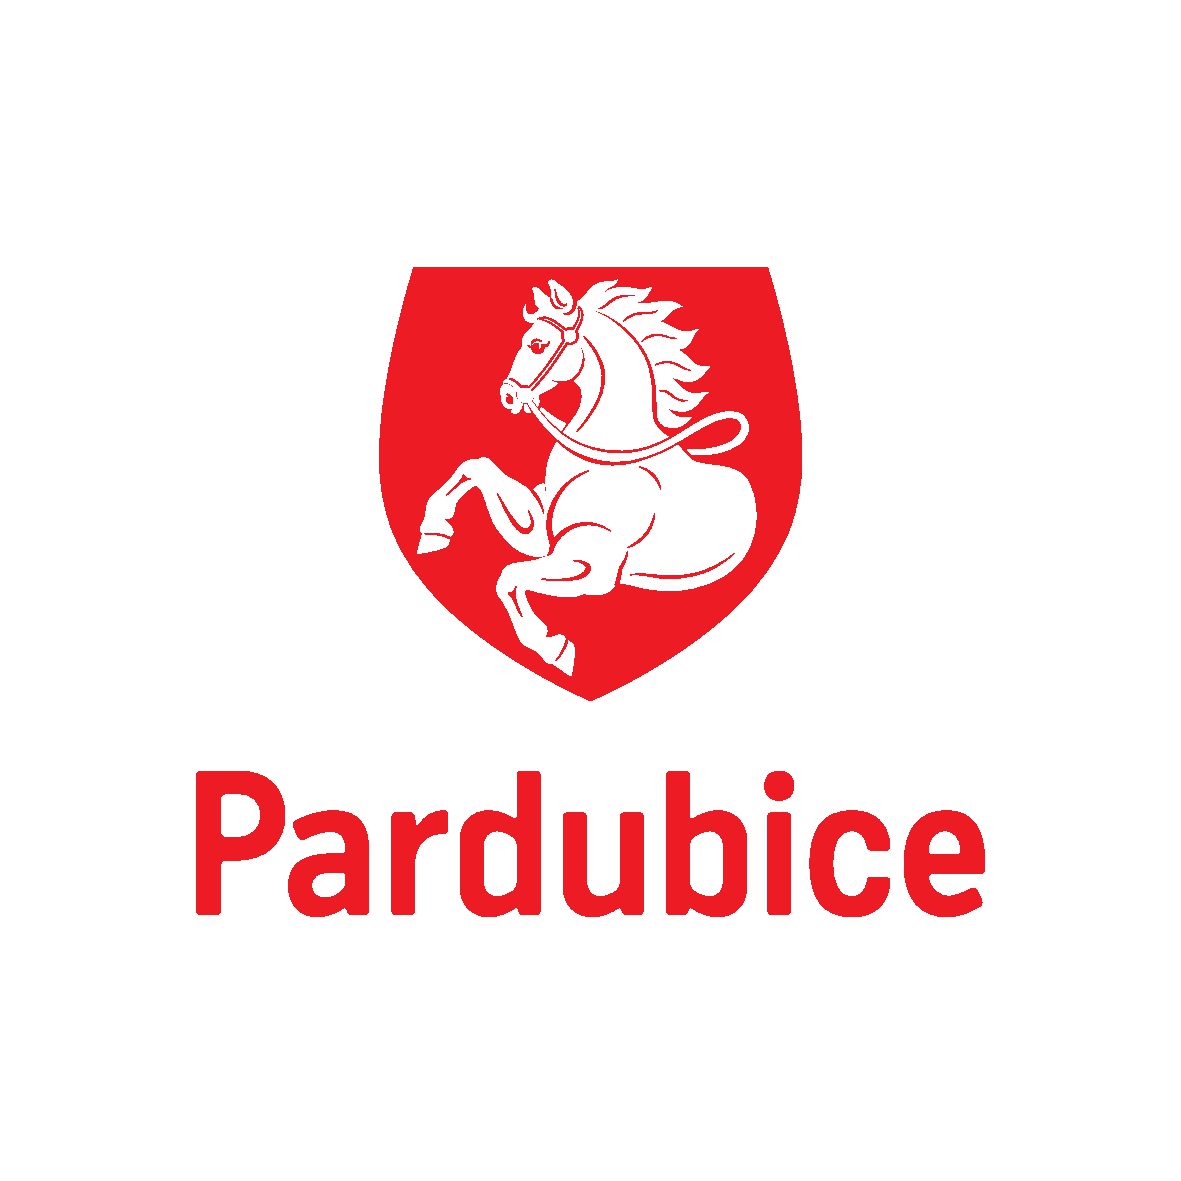 Pardubice logo 1C 1